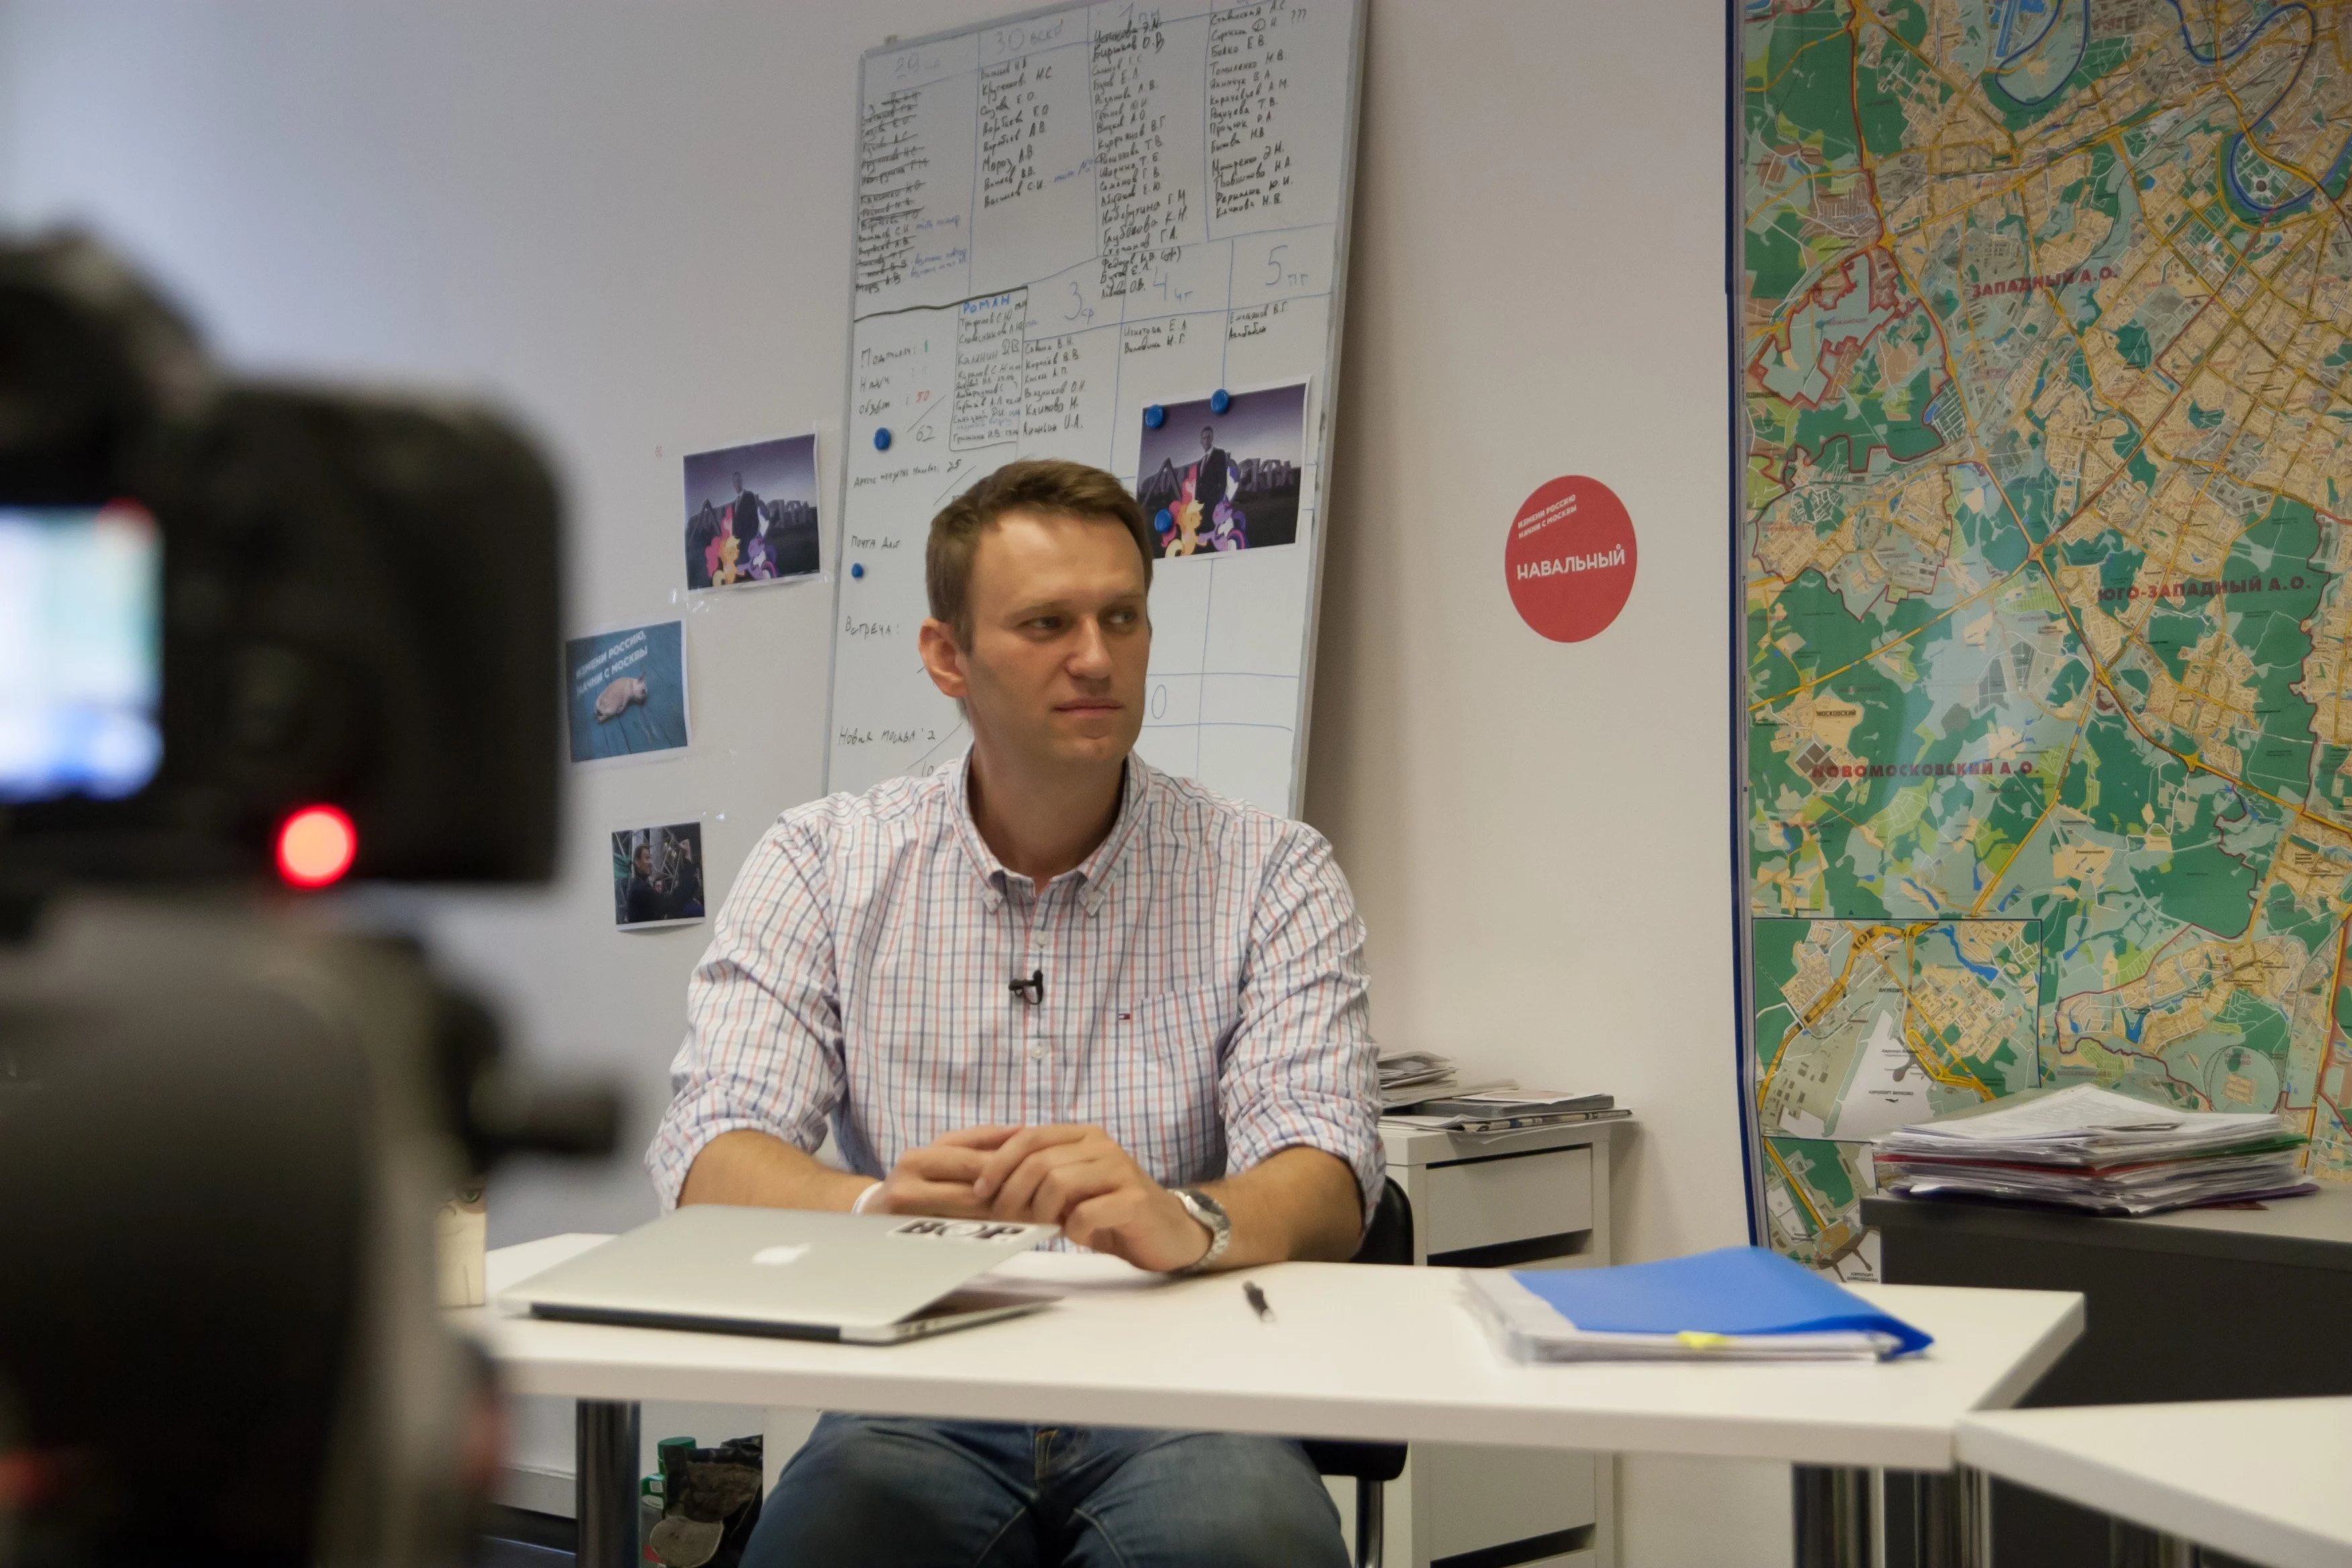 Мы постарались обойти тему политики и поговорить с Навальным как единственным политиком, открыто признающимся в том, что он играет.